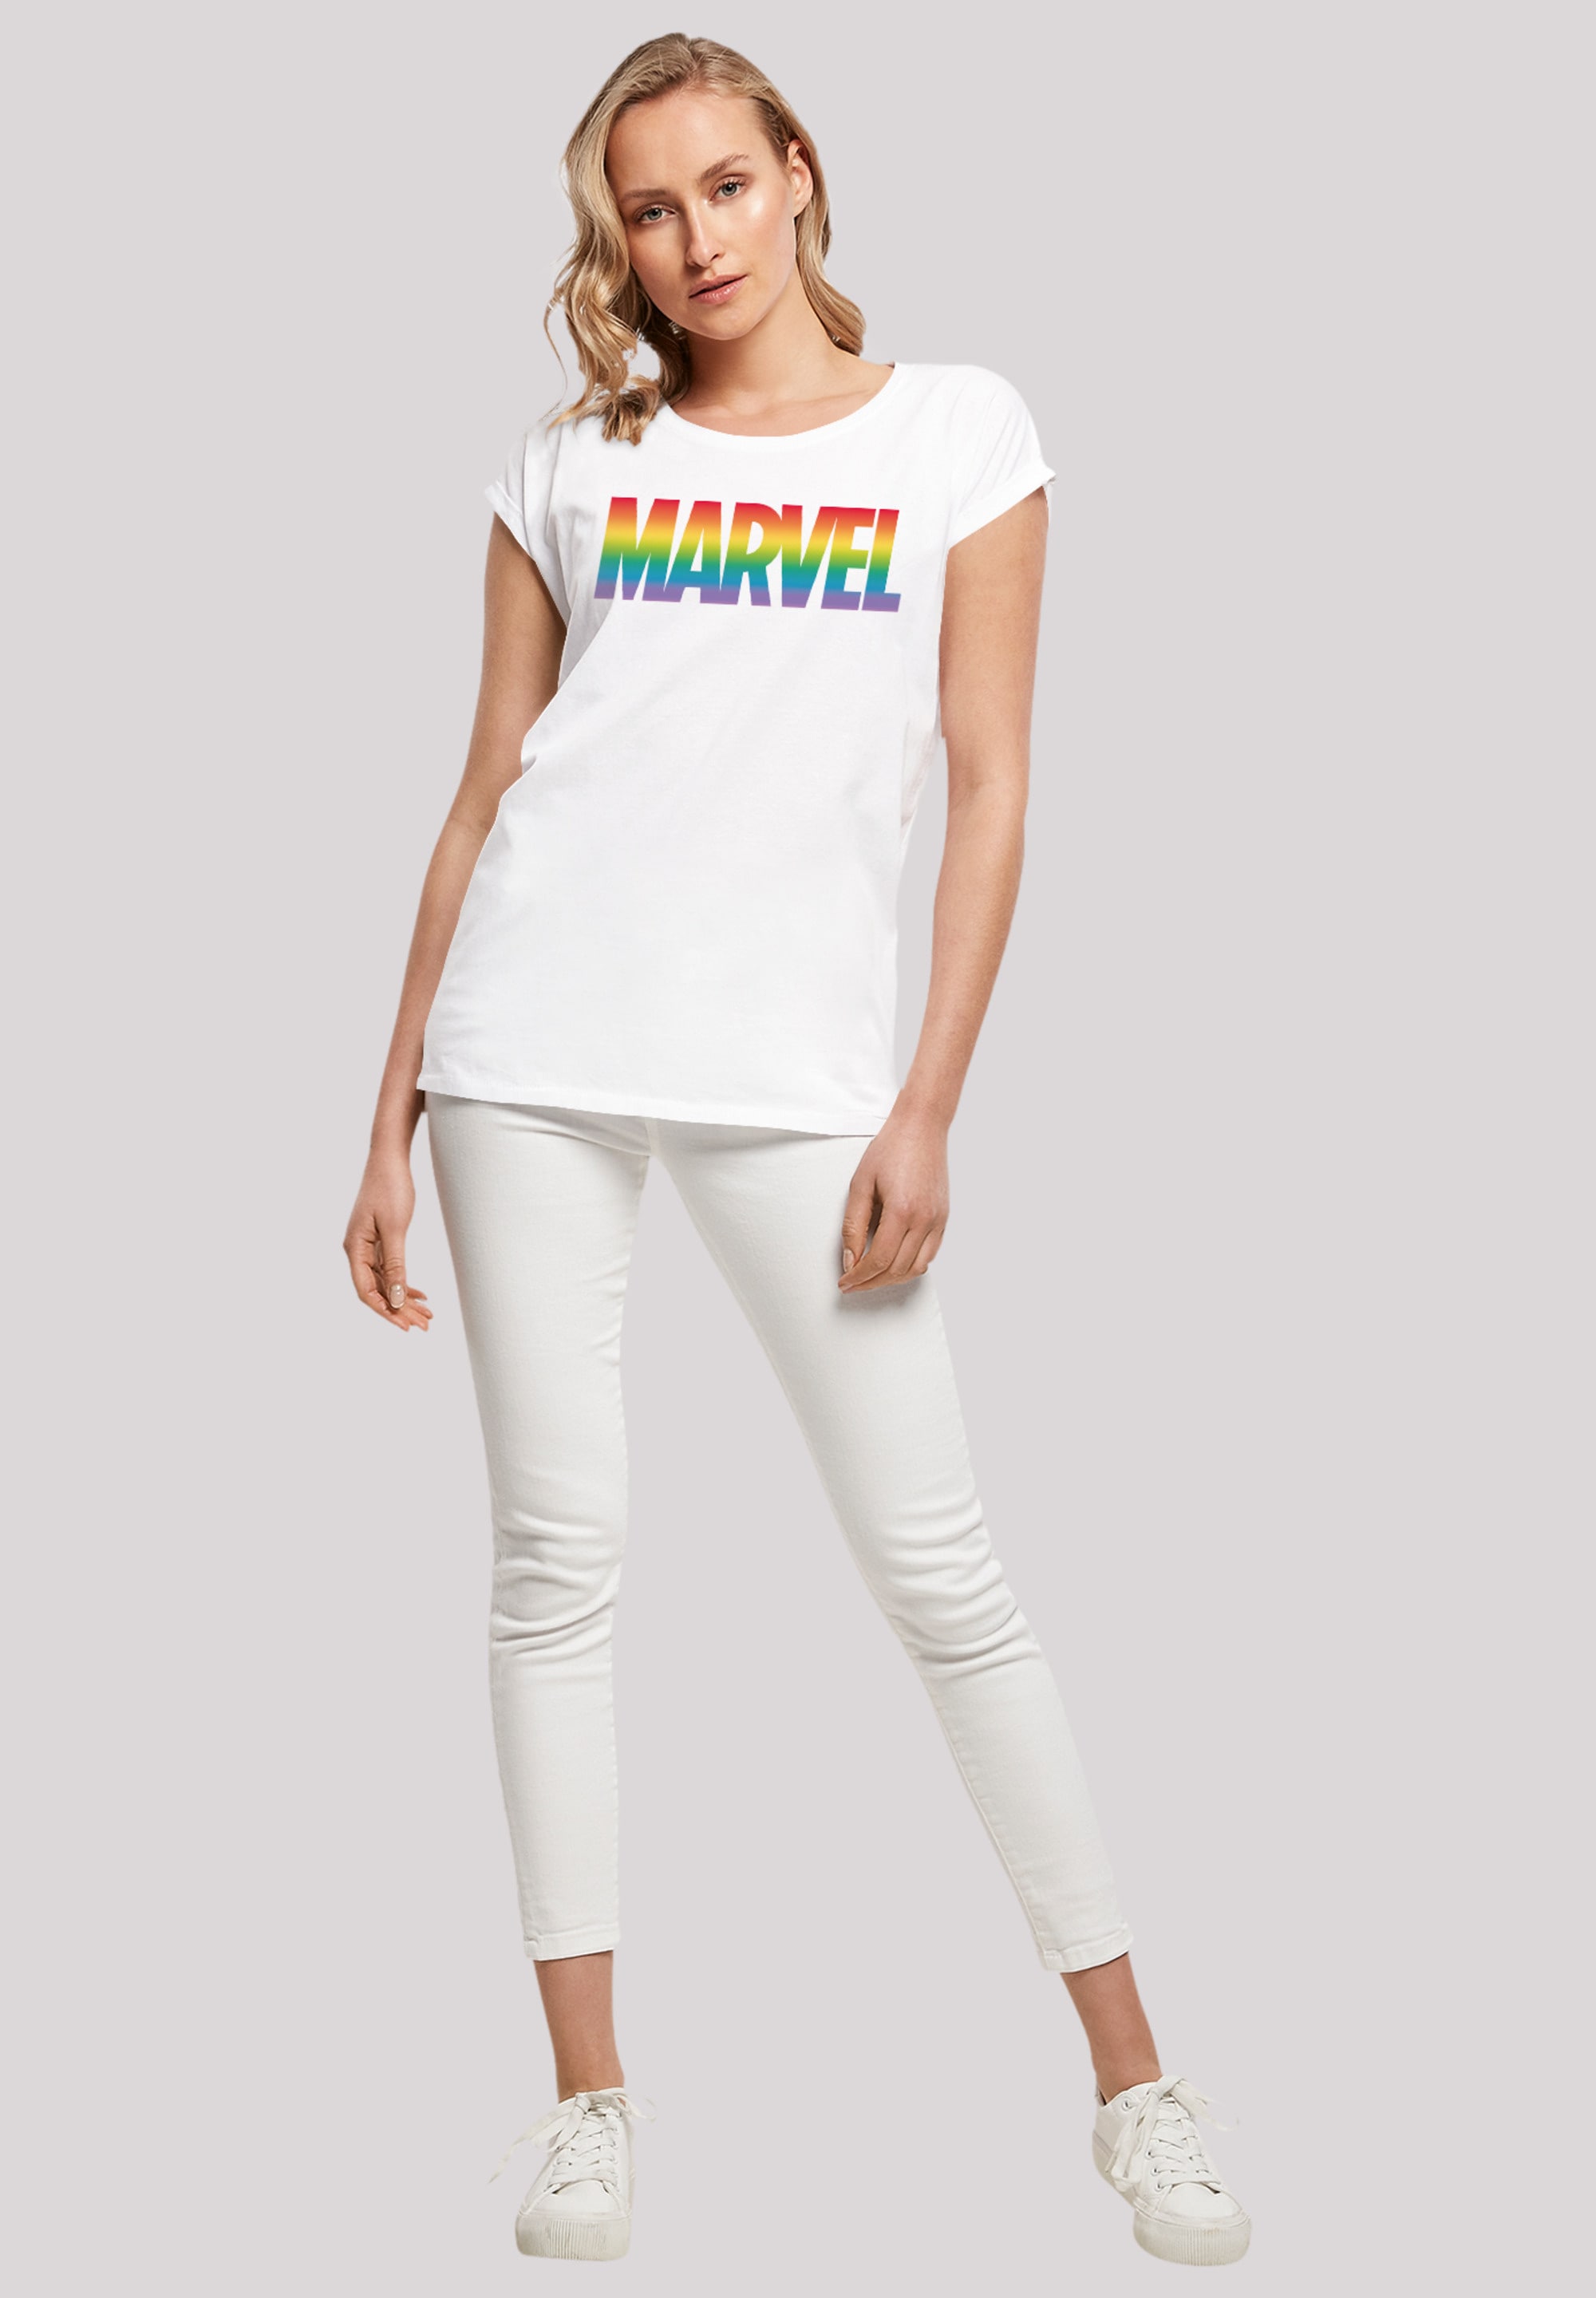 F4NT4STIC bestellen Pride«, Premium | »Marvel BAUR Qualität T-Shirt